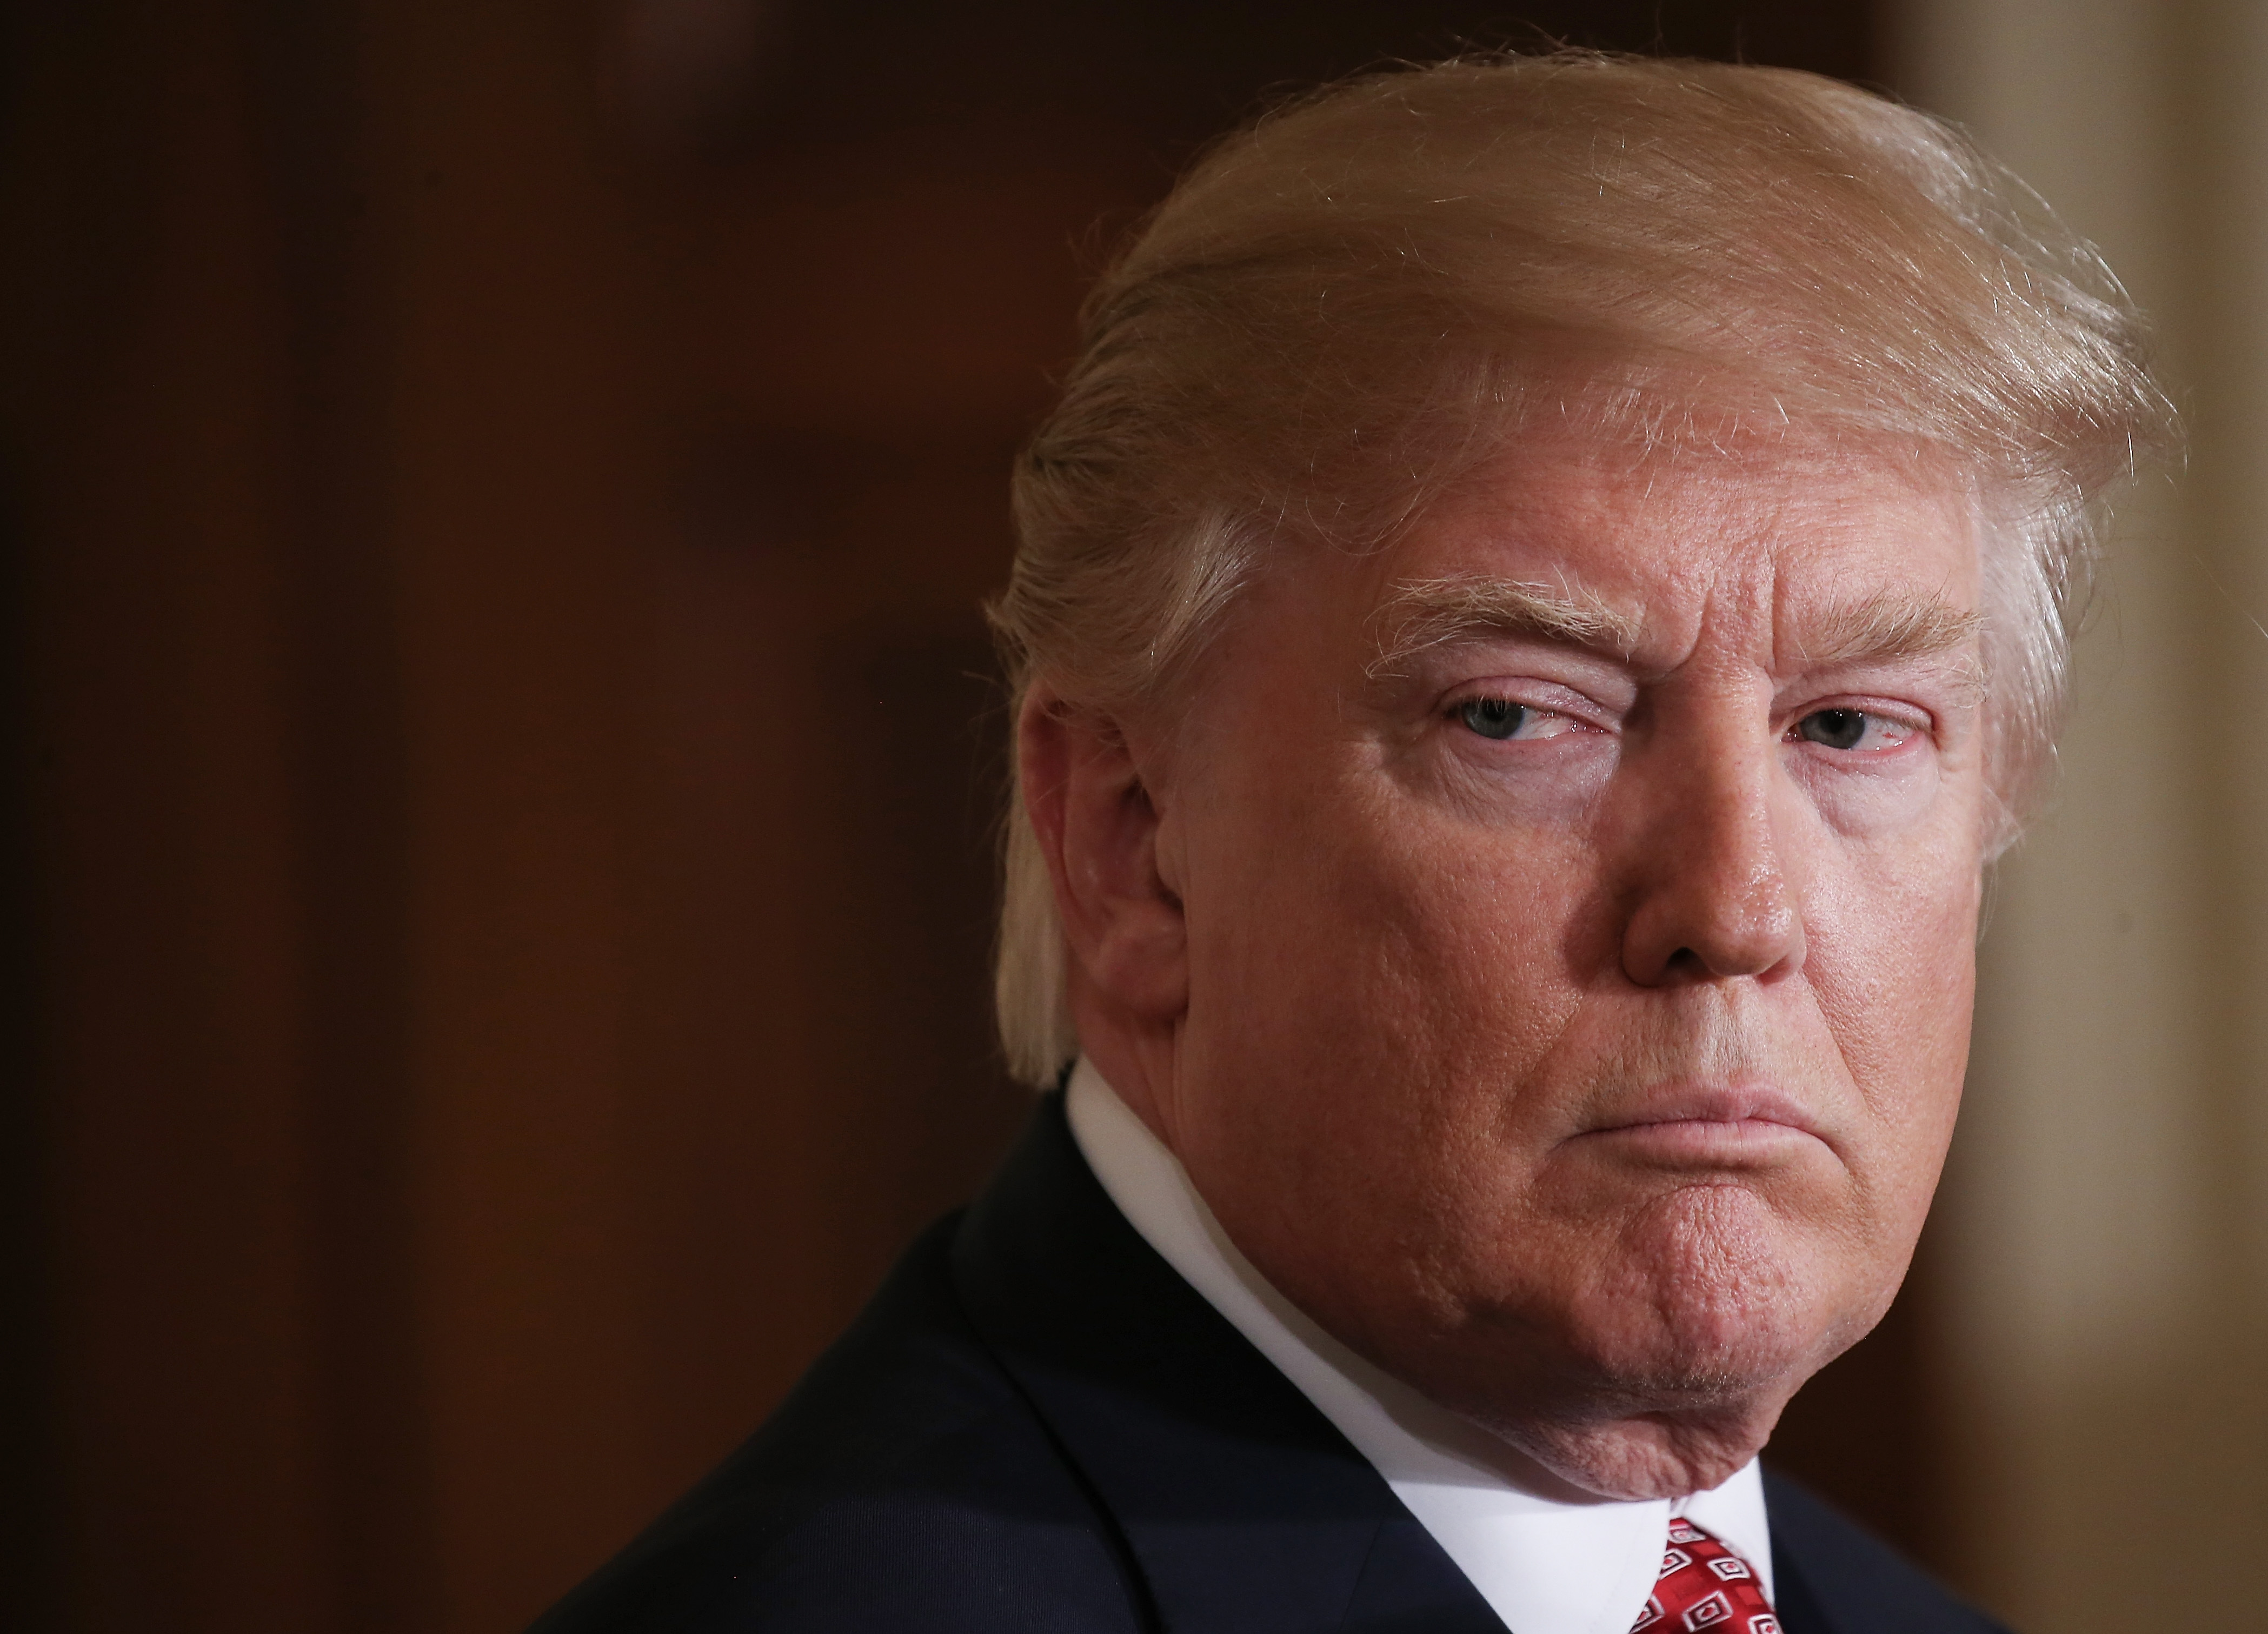 El presidente Trump apenas tiene un 40 por ciento de aprobación, según Gallup. (Crédito: Mario Tama/Getty Images)